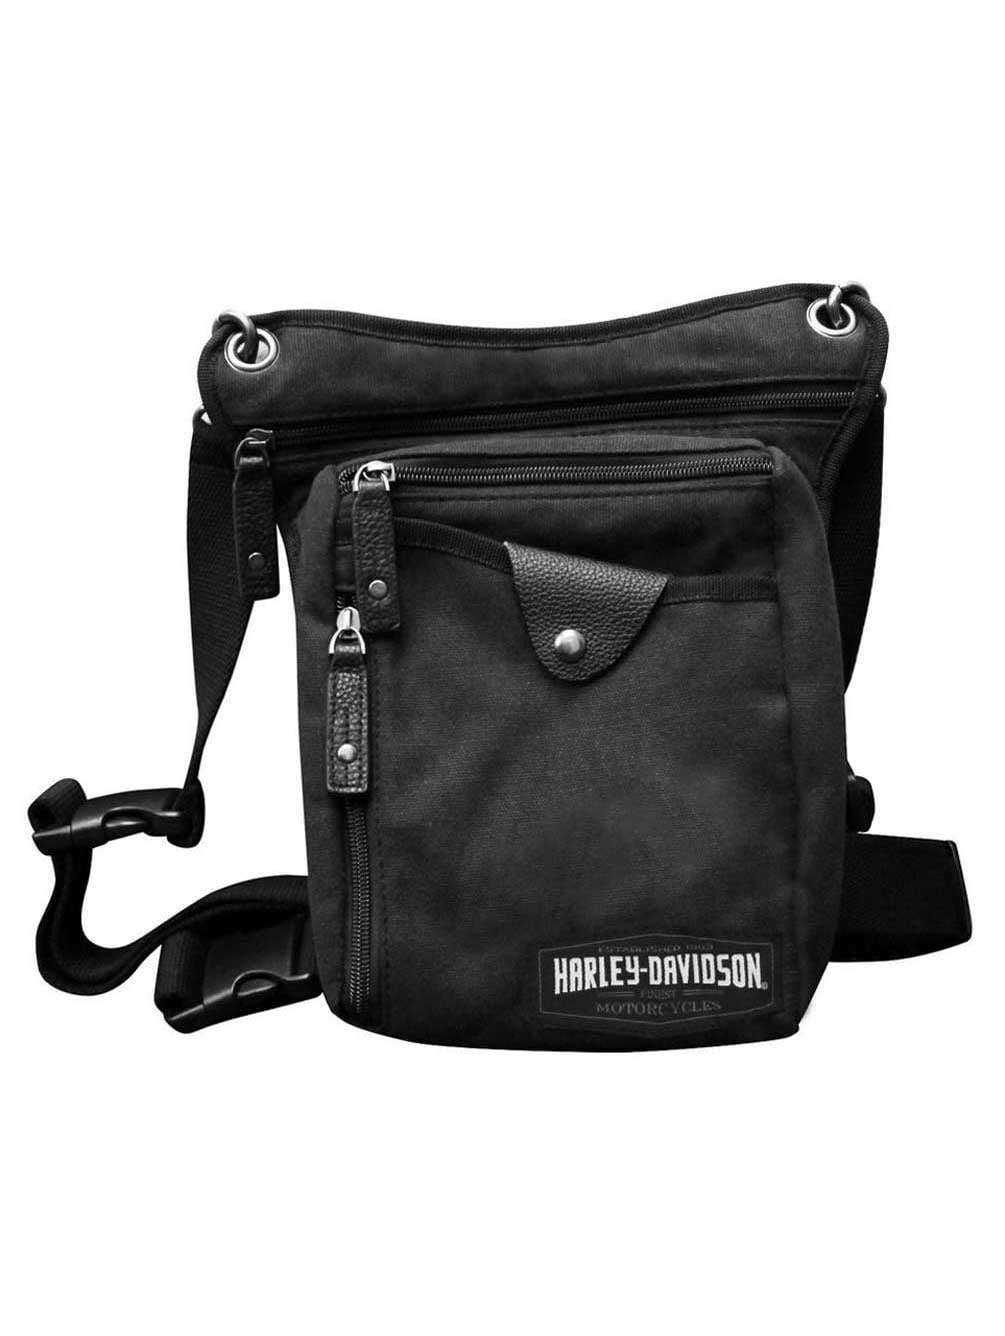 Harley Davidson Design Crossbody bag Messenger with Adjustable Leather Strap